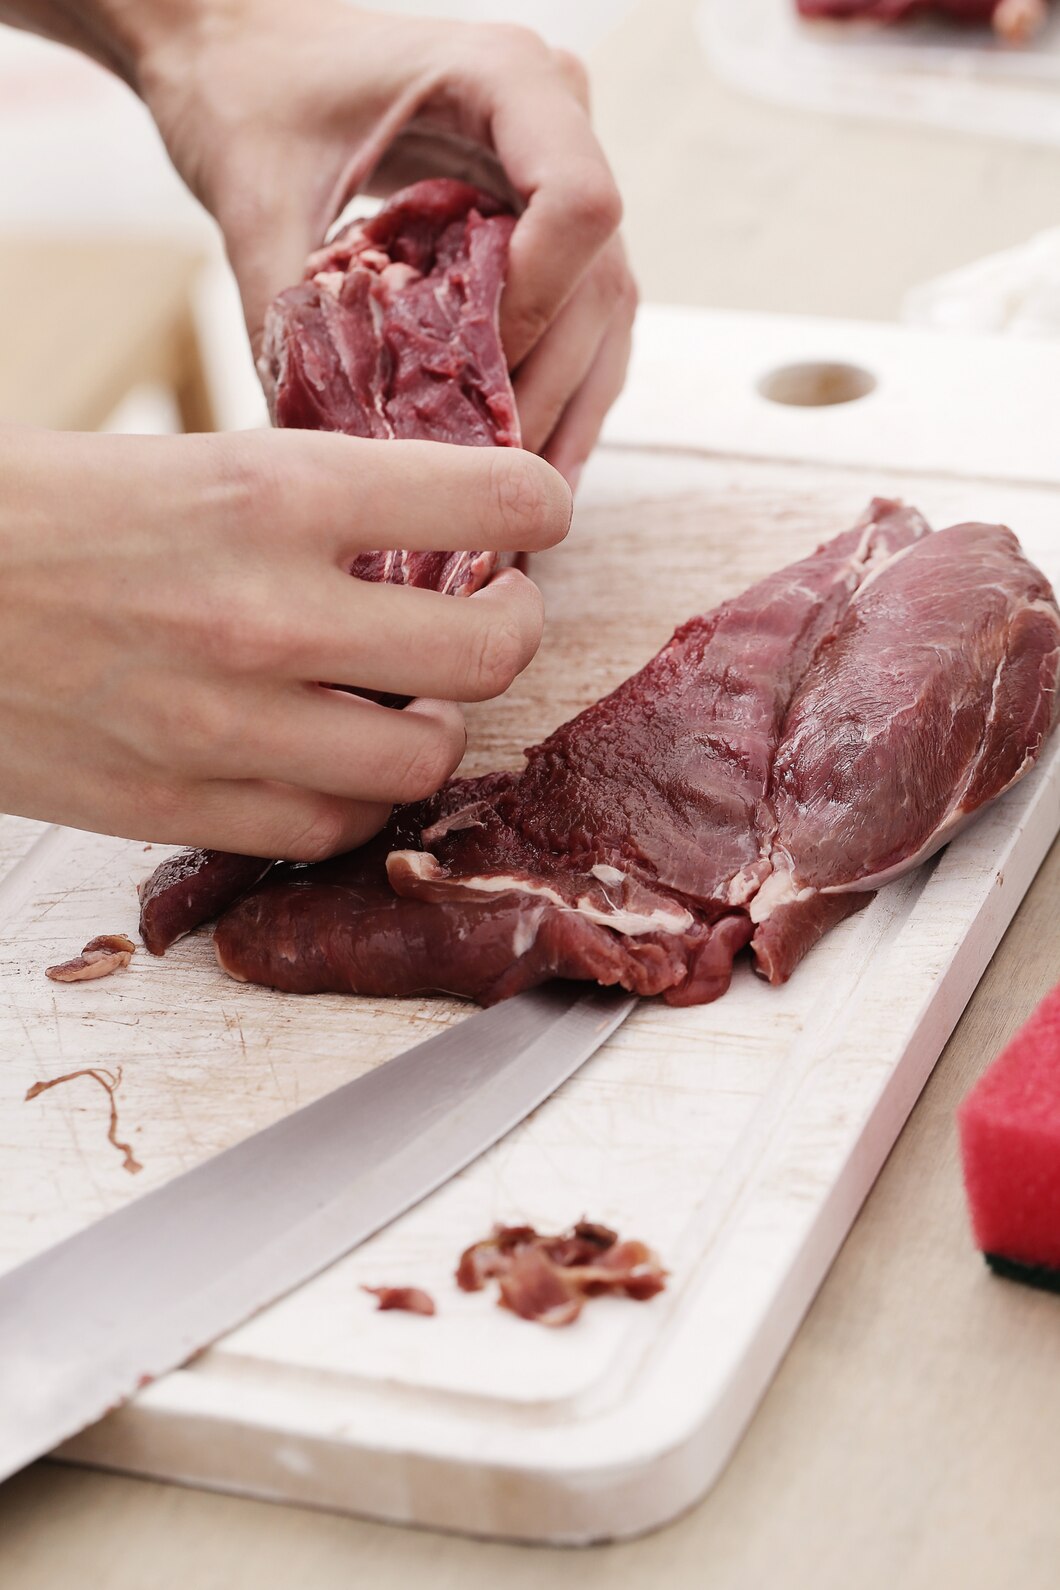 Berikut 3 Jenis Resep Daging Untuk Mengolah Daging Kurban Agar Tidak membosankan